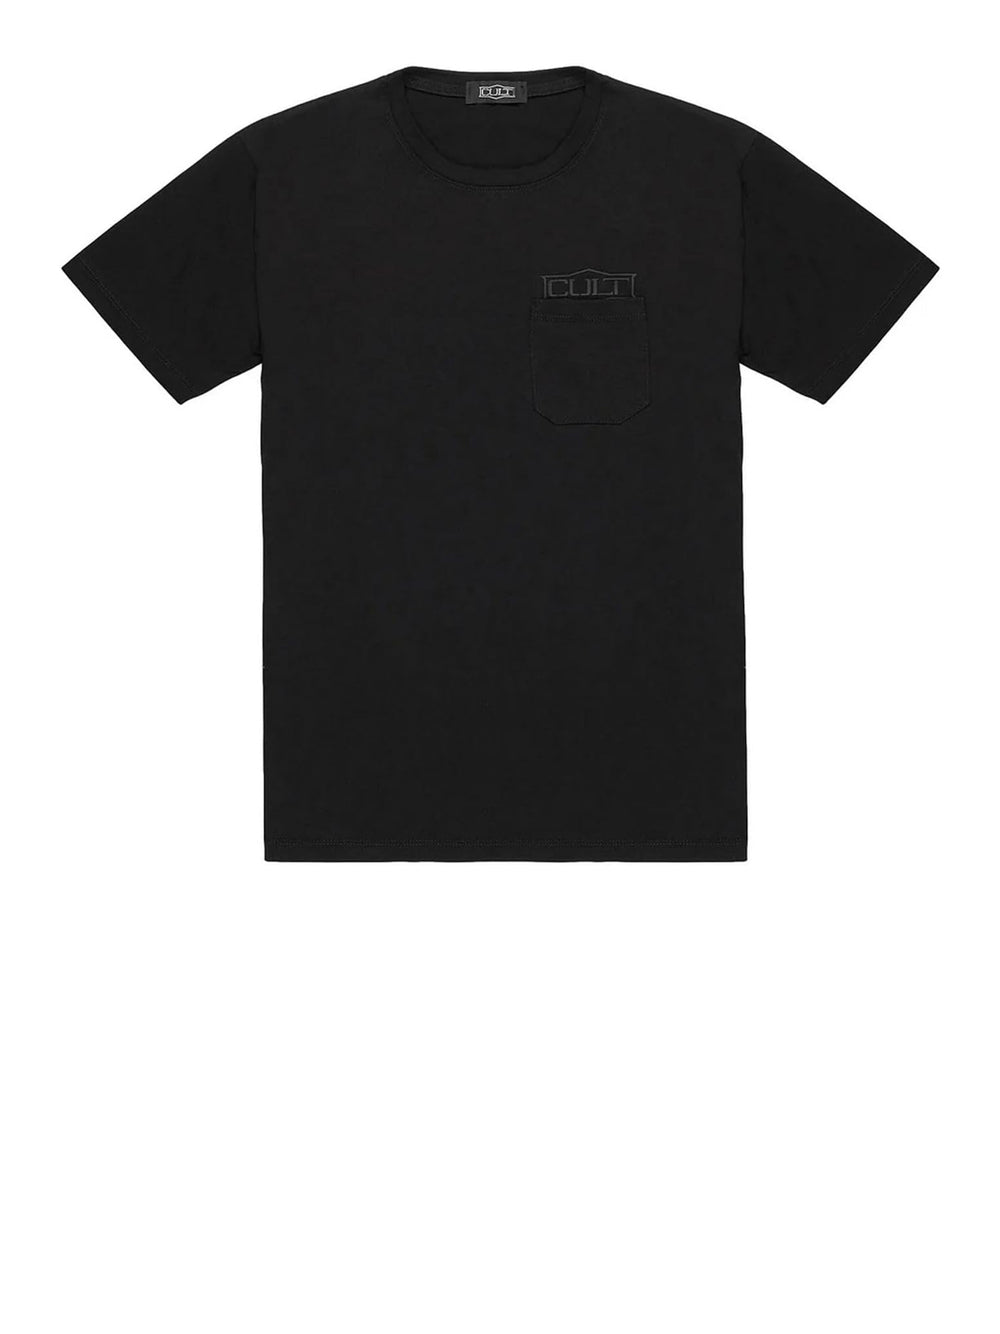 CULT T-shirt Donna - Nero modello CLC704900